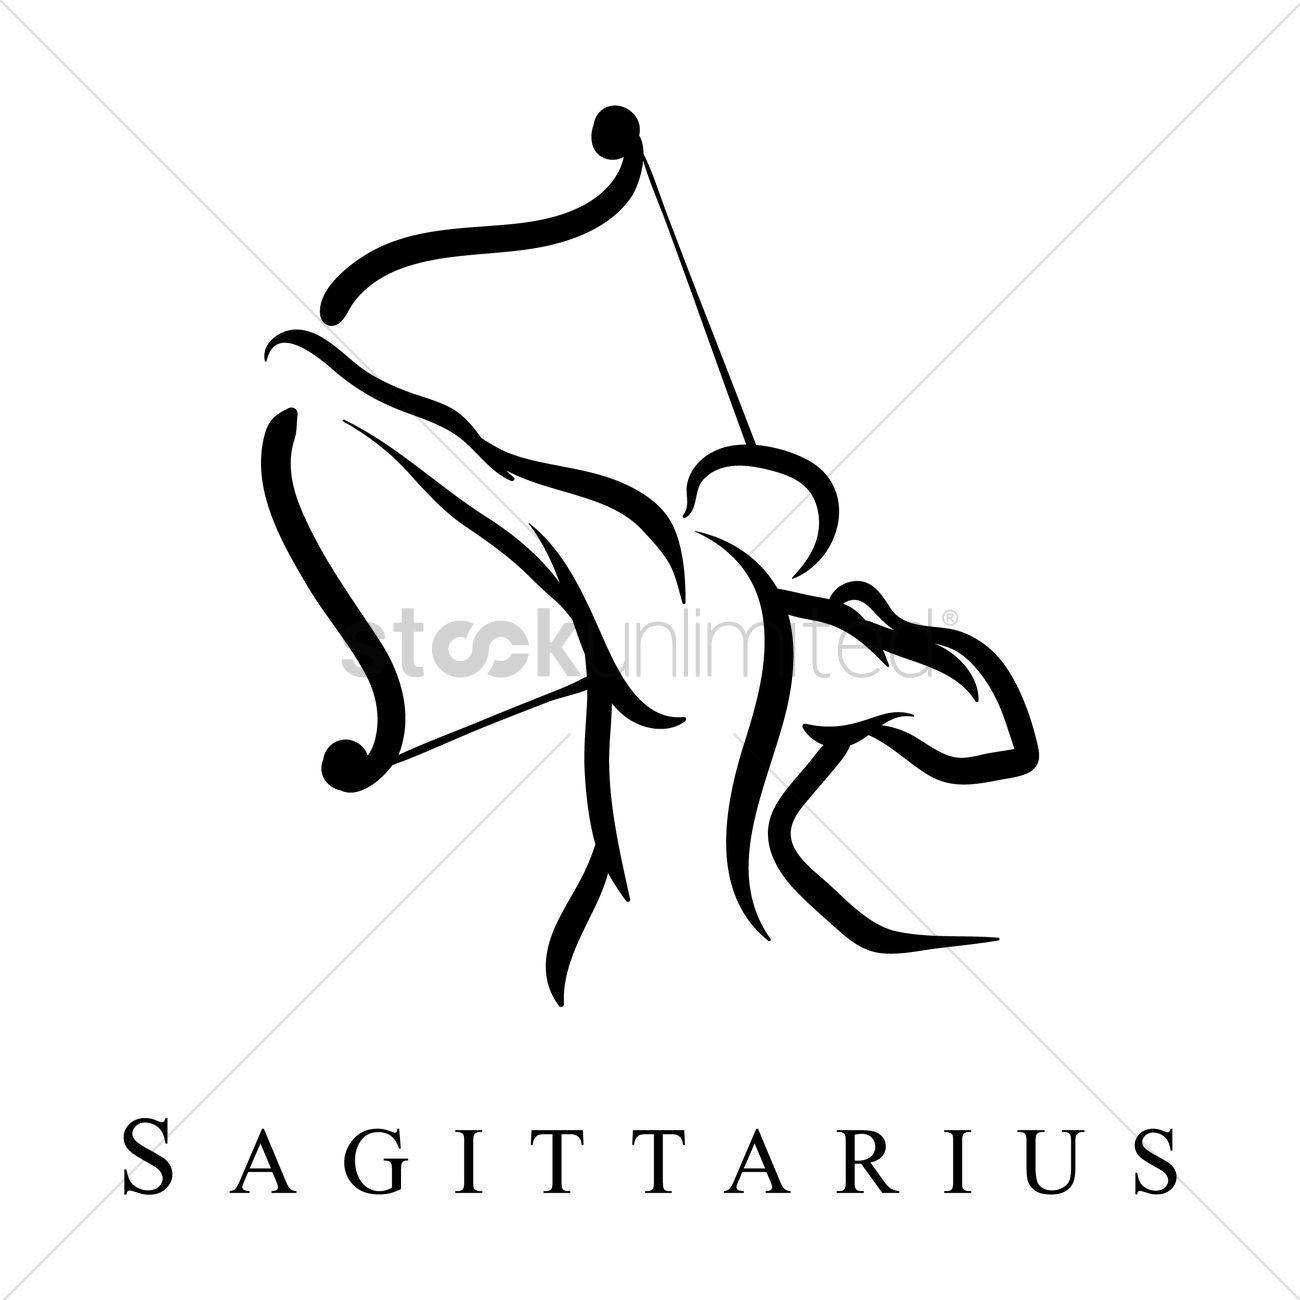 Sagittarius знак вектор